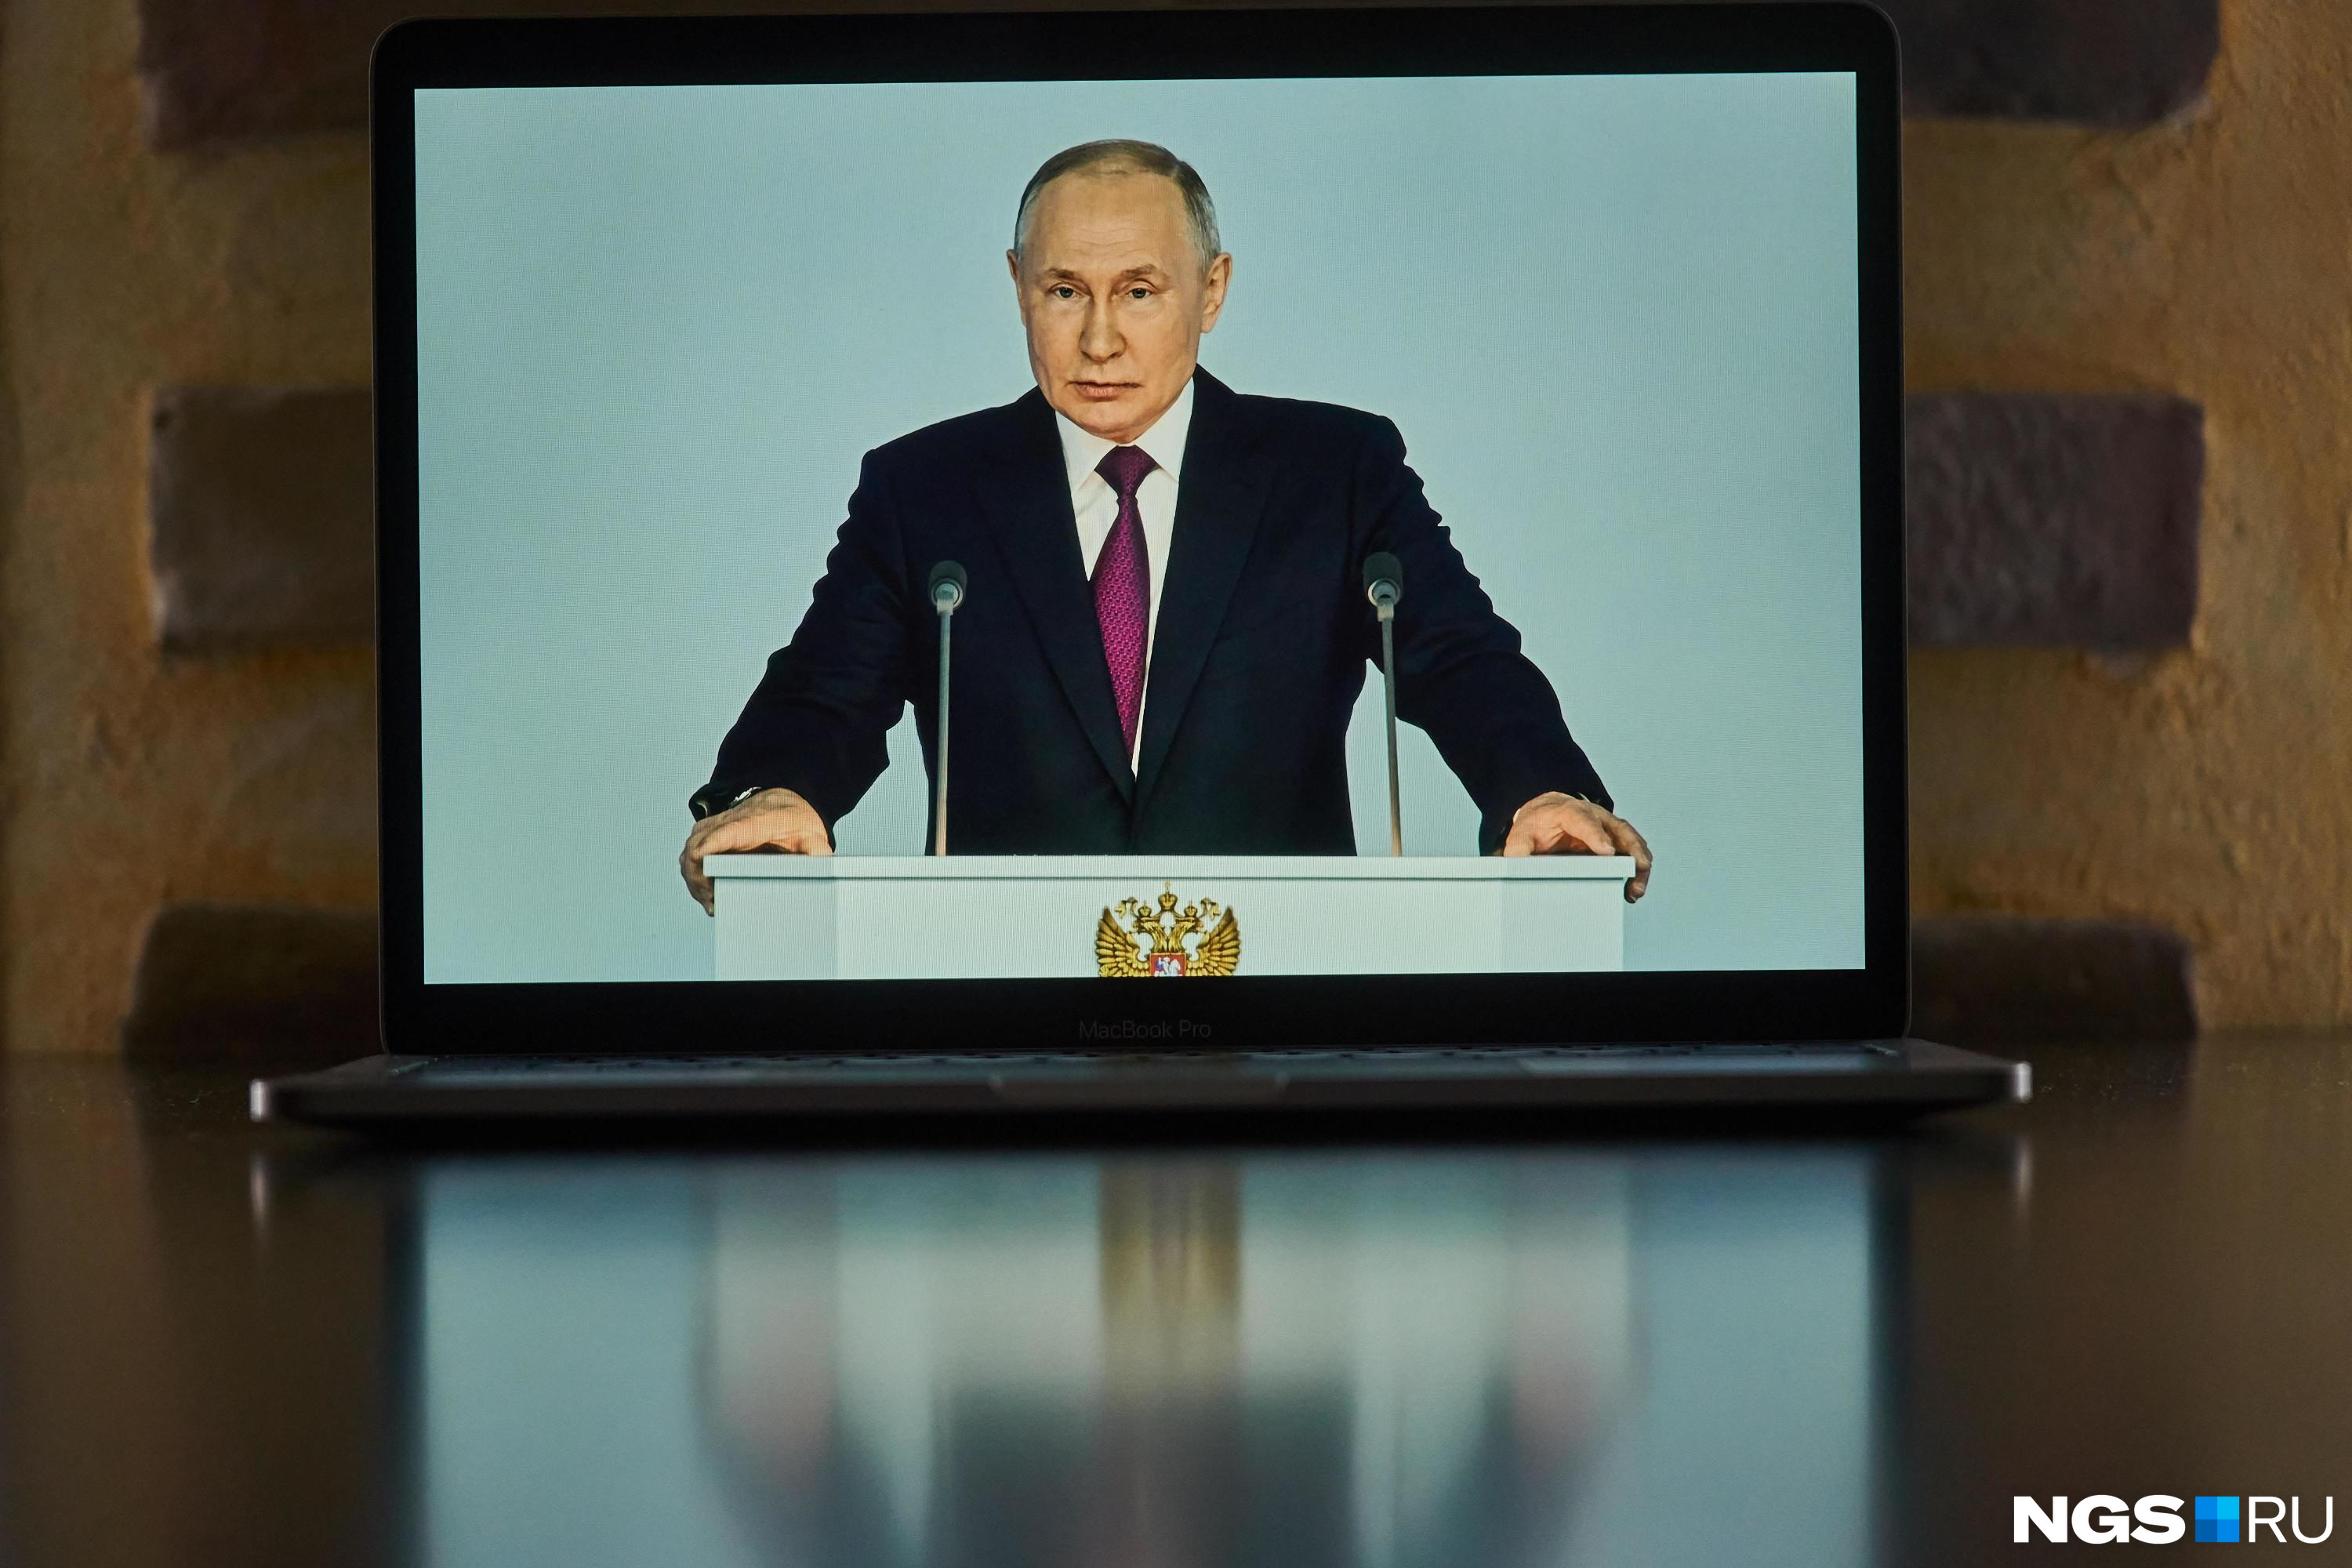 «За добросовестный труд и достижения». Путин наградил политика, тренера и госслужащую из Кузбасса — что о них известно